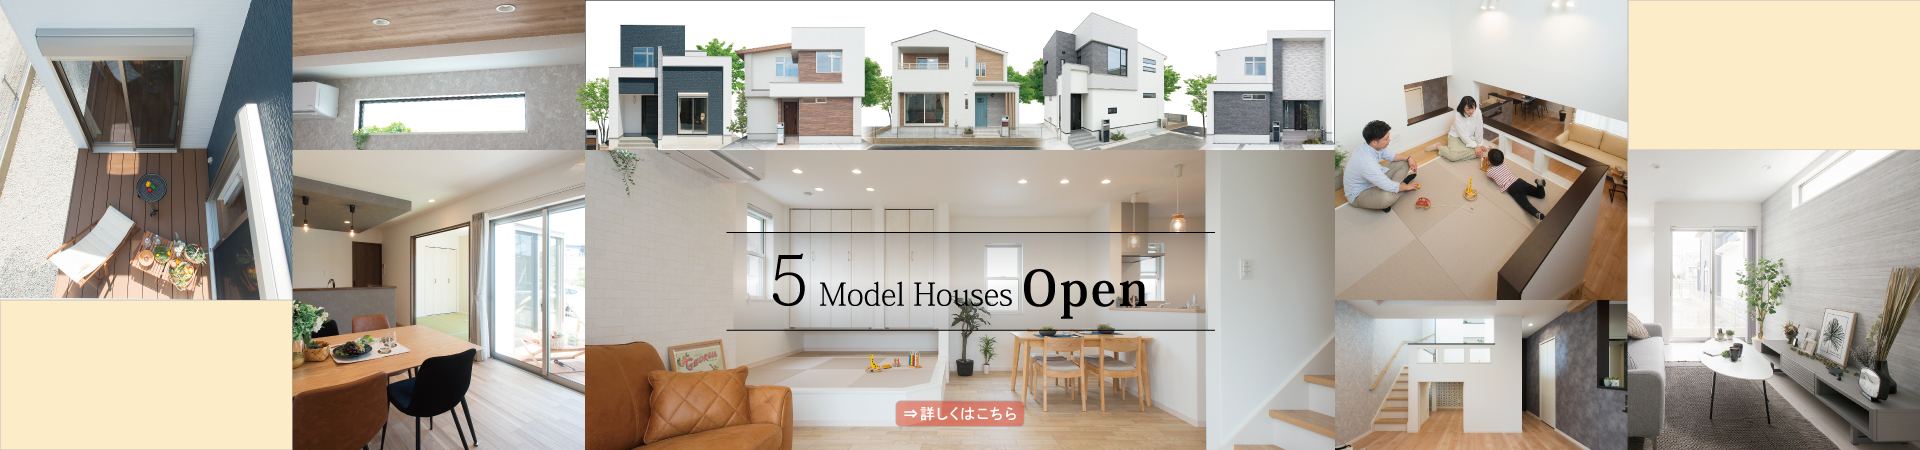 この春に入居できる！姫路・高砂・加古川で見学できる3棟の販売中モデルハウス